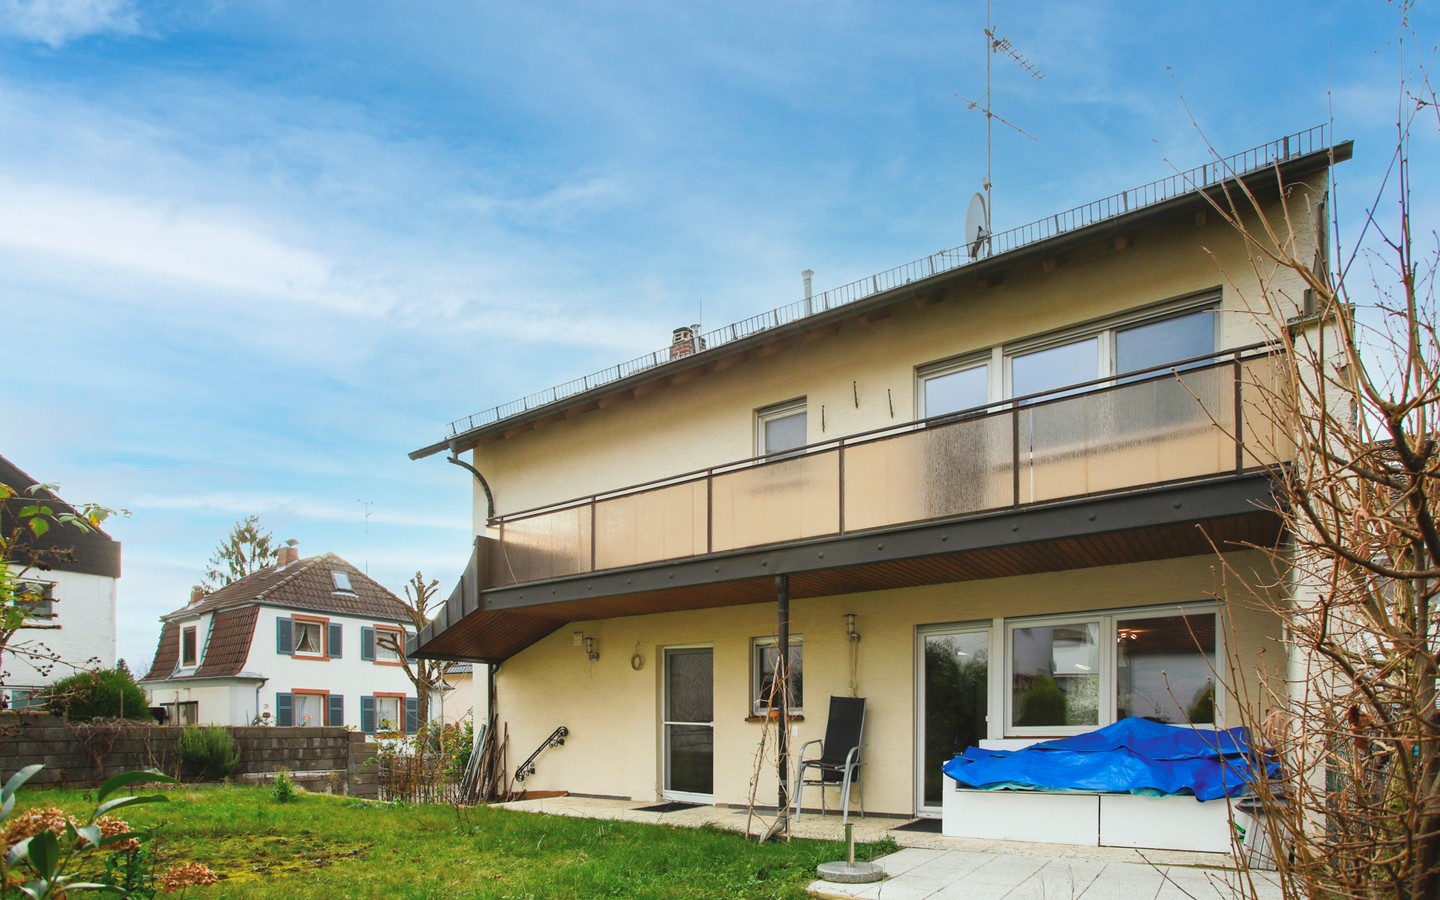 Gartenansicht - Modernisiertes Einfamilienhaus mit Garten in familienfreundlicher Wohnlage von Hemsbach